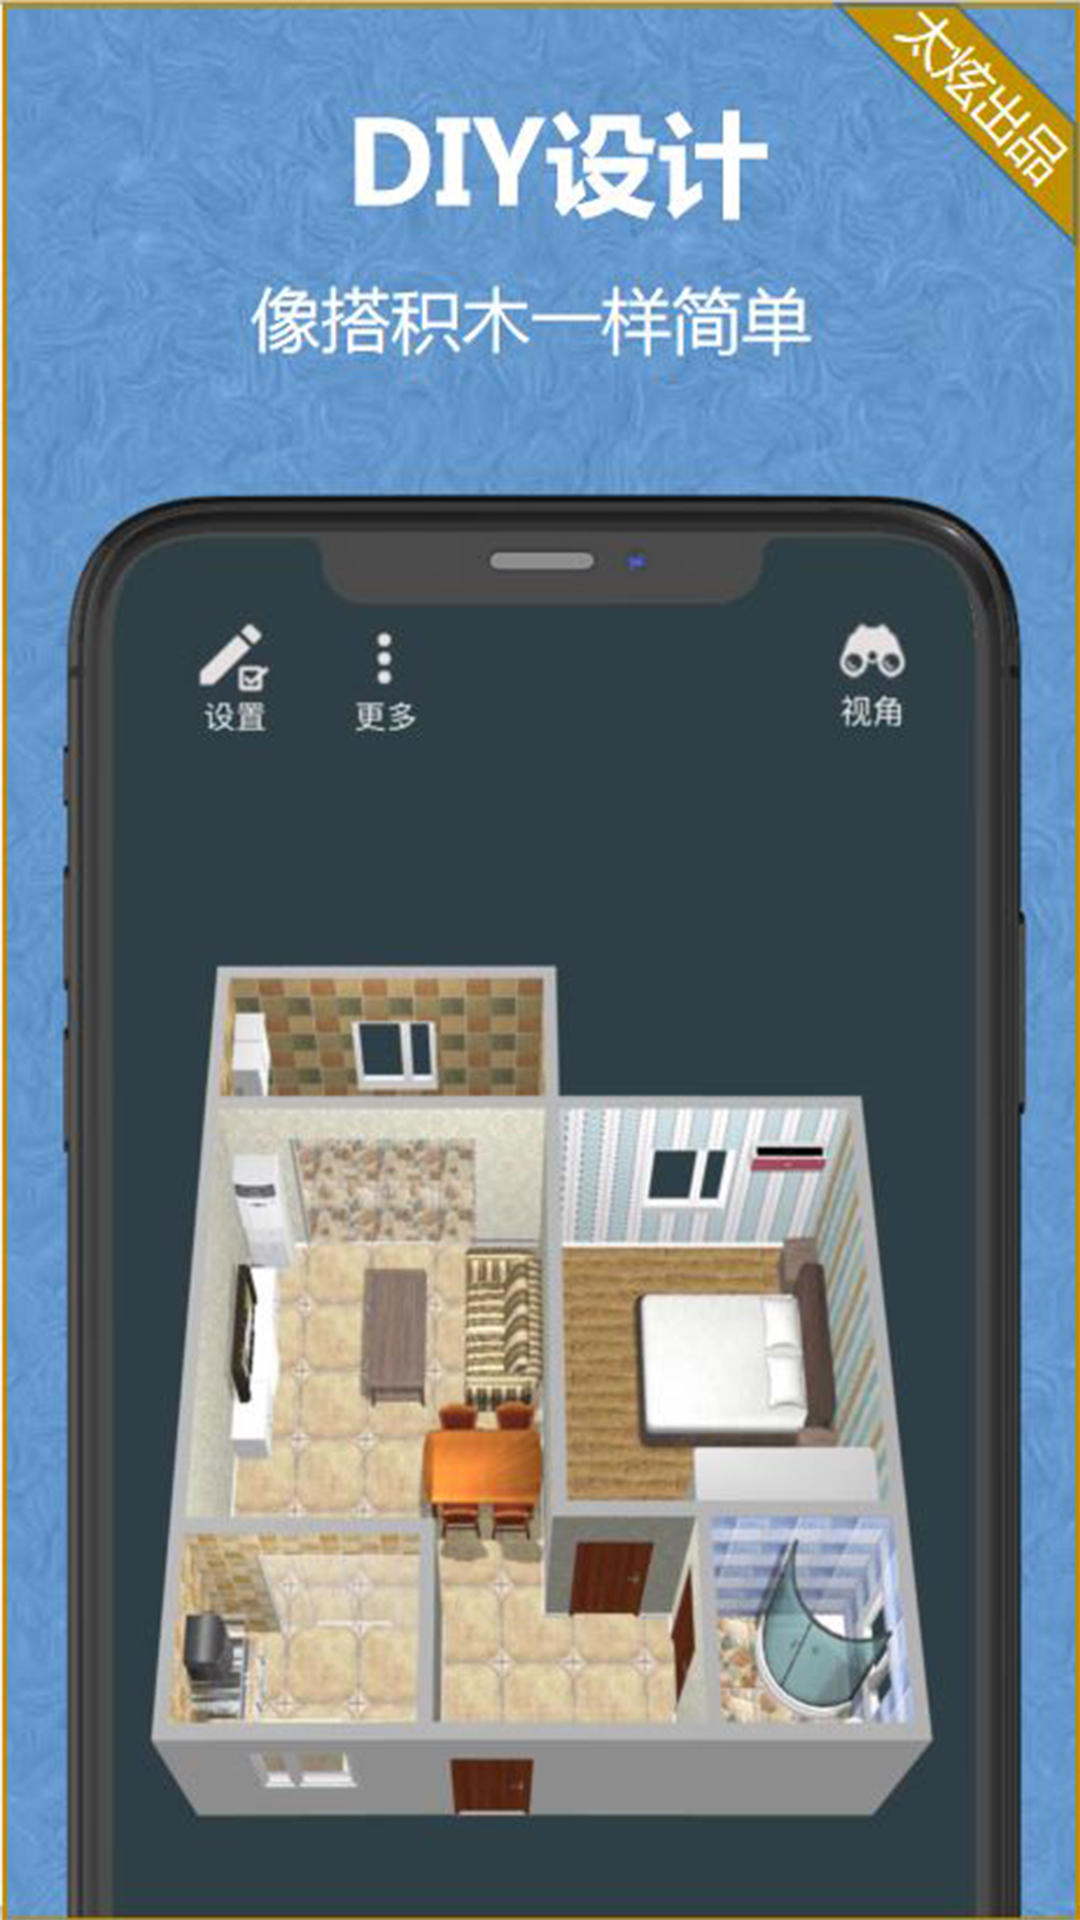 家炫-DIY房屋设计v1.0.59截图1